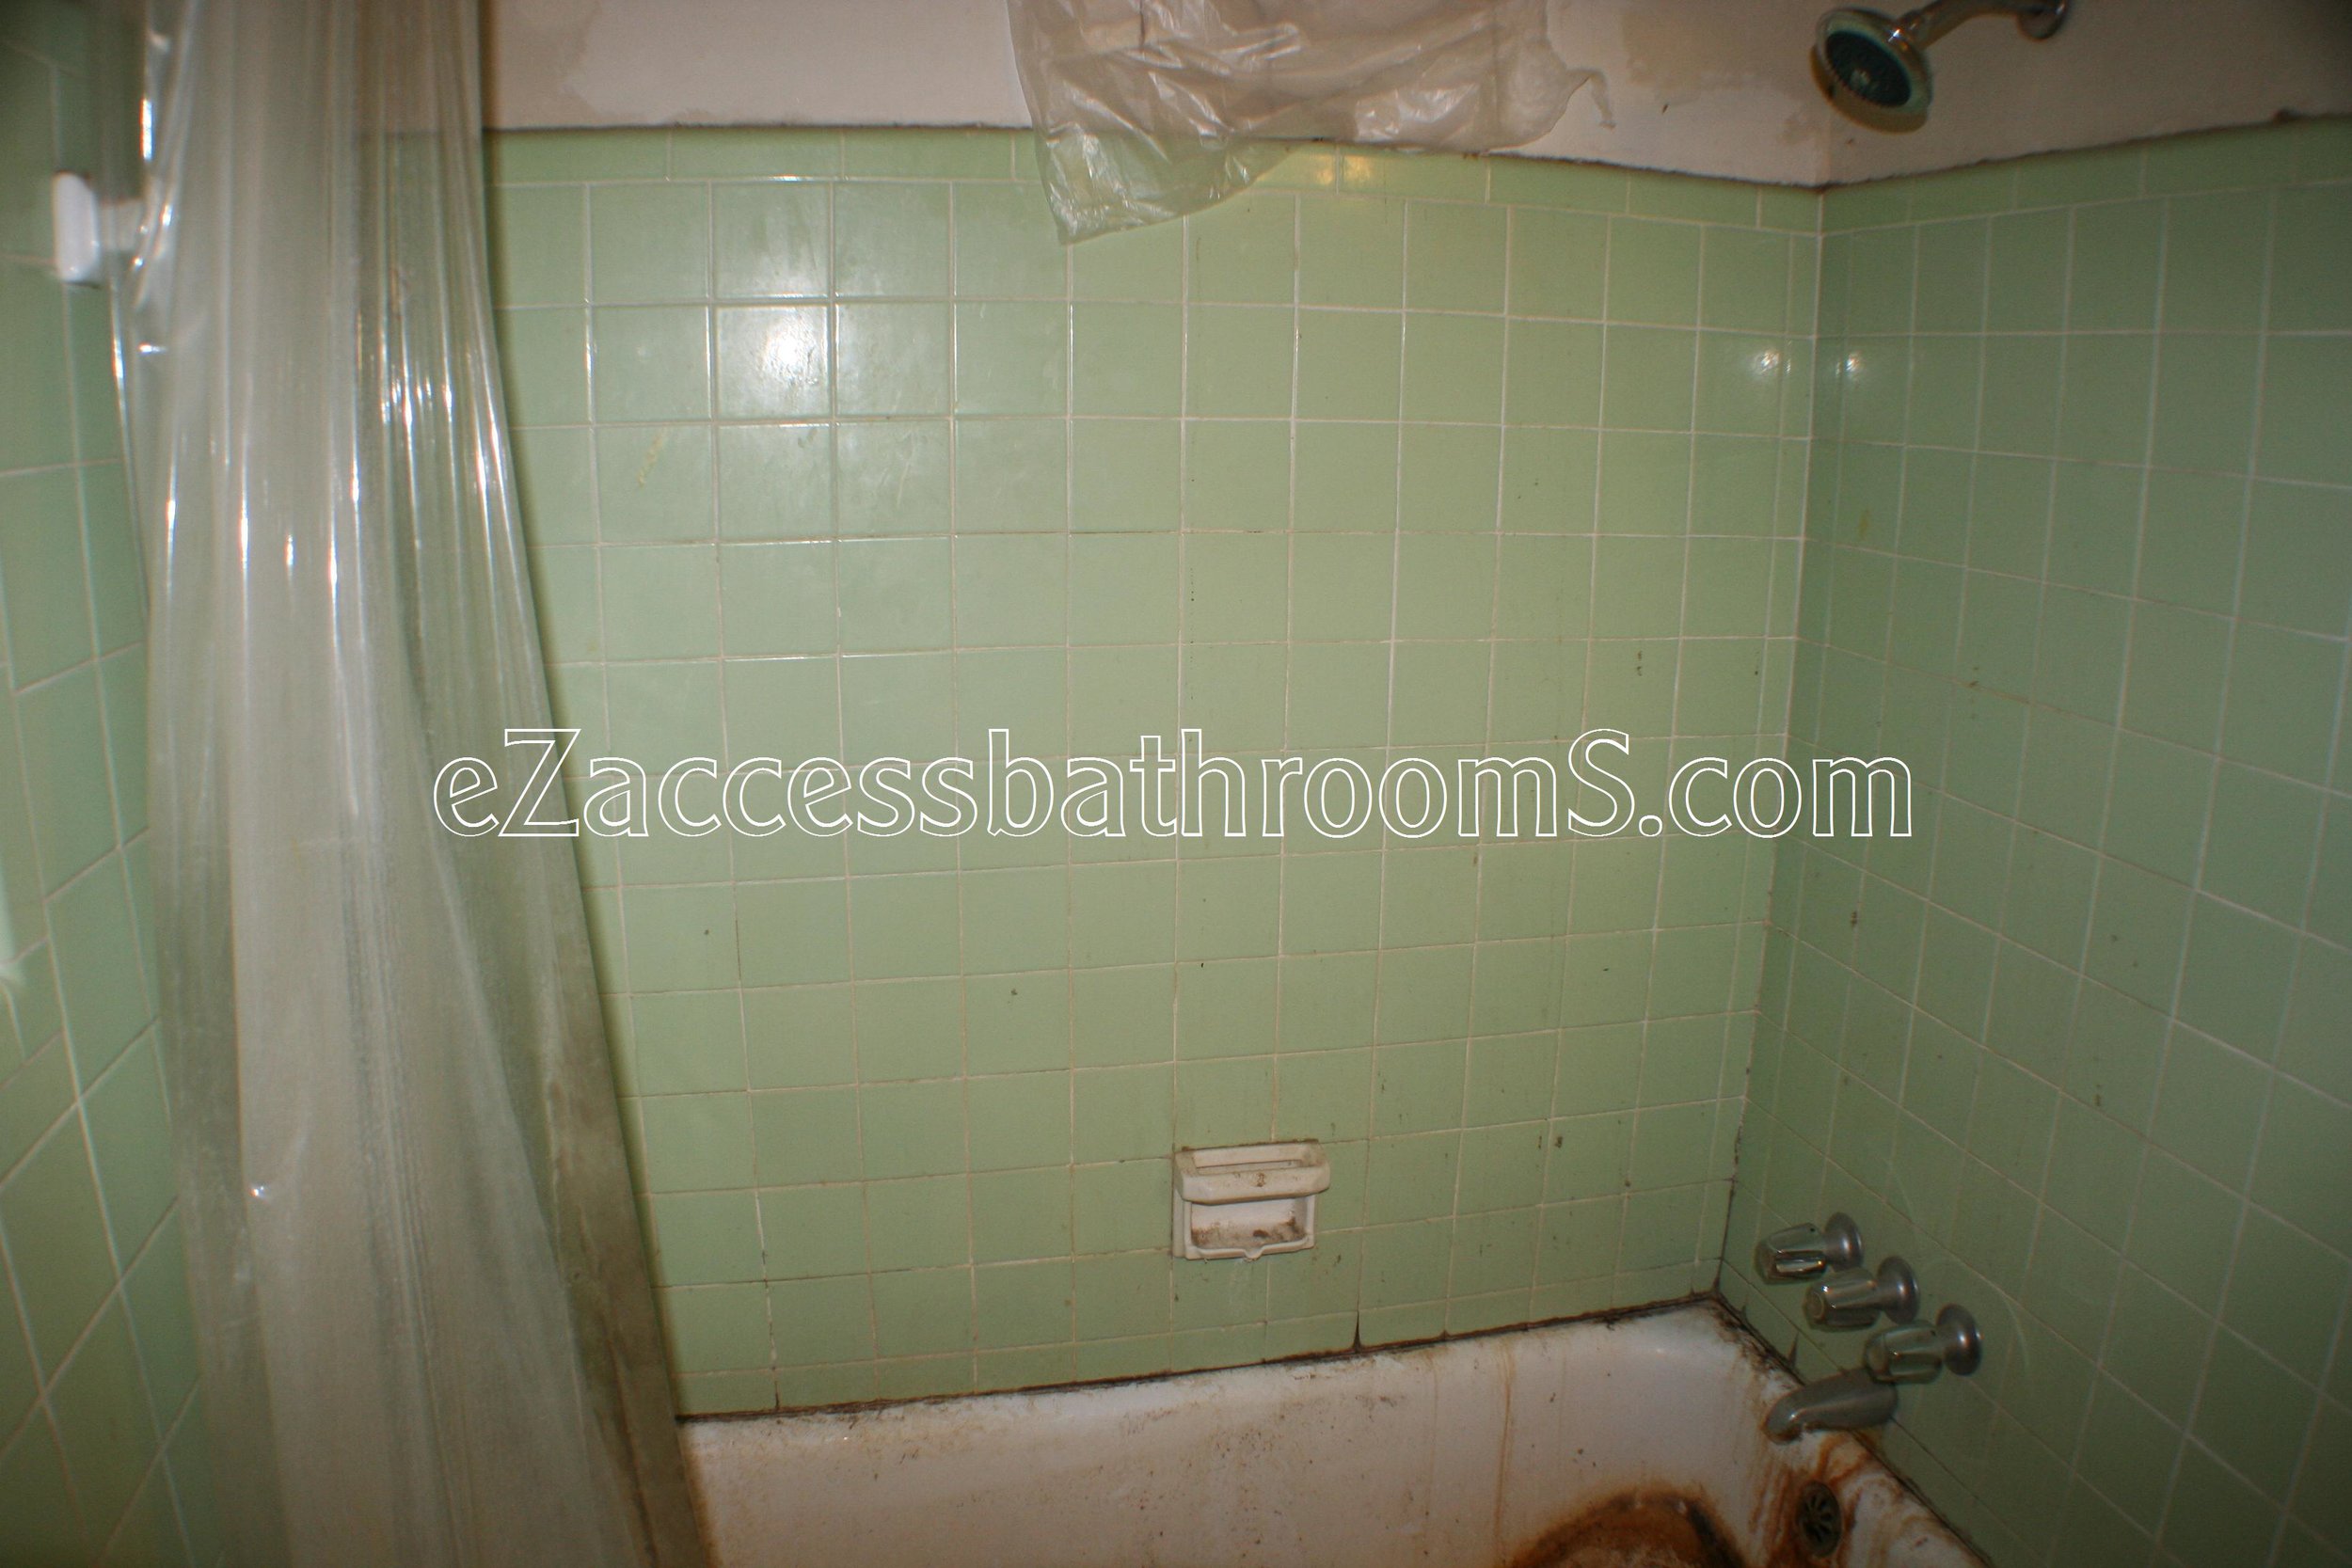 rollin shower ezaccessbathrooms.com 0021.JPG